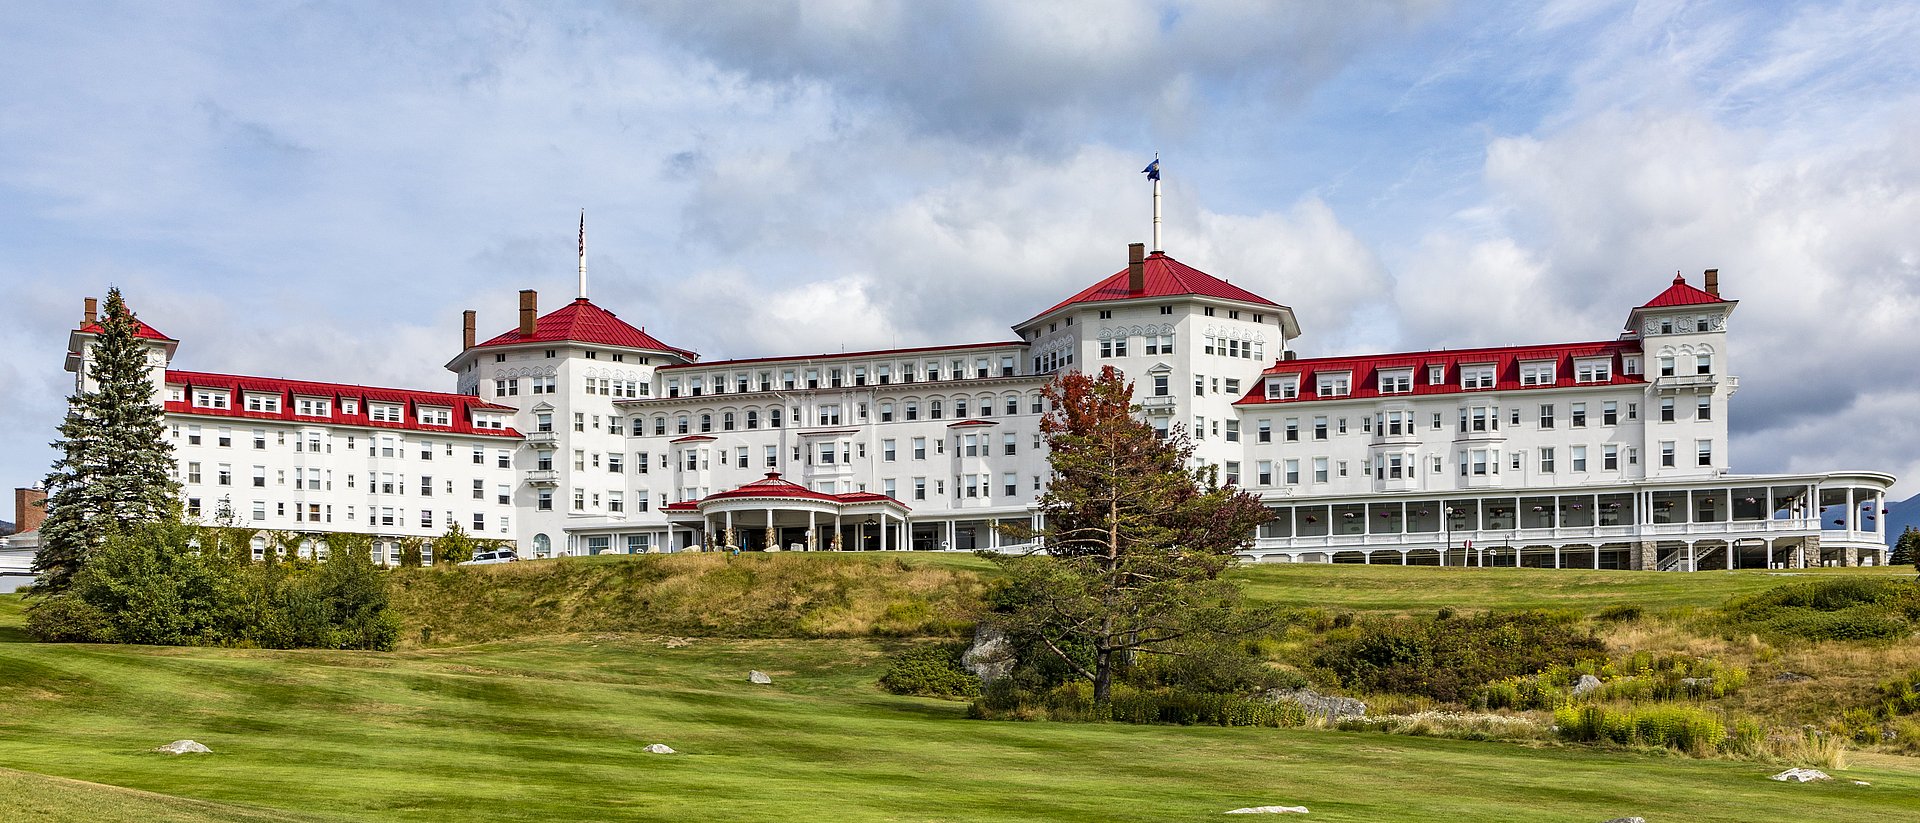 Das Mount Washington Hotel, Schauplatz der Bretton-Woods-Konferenz